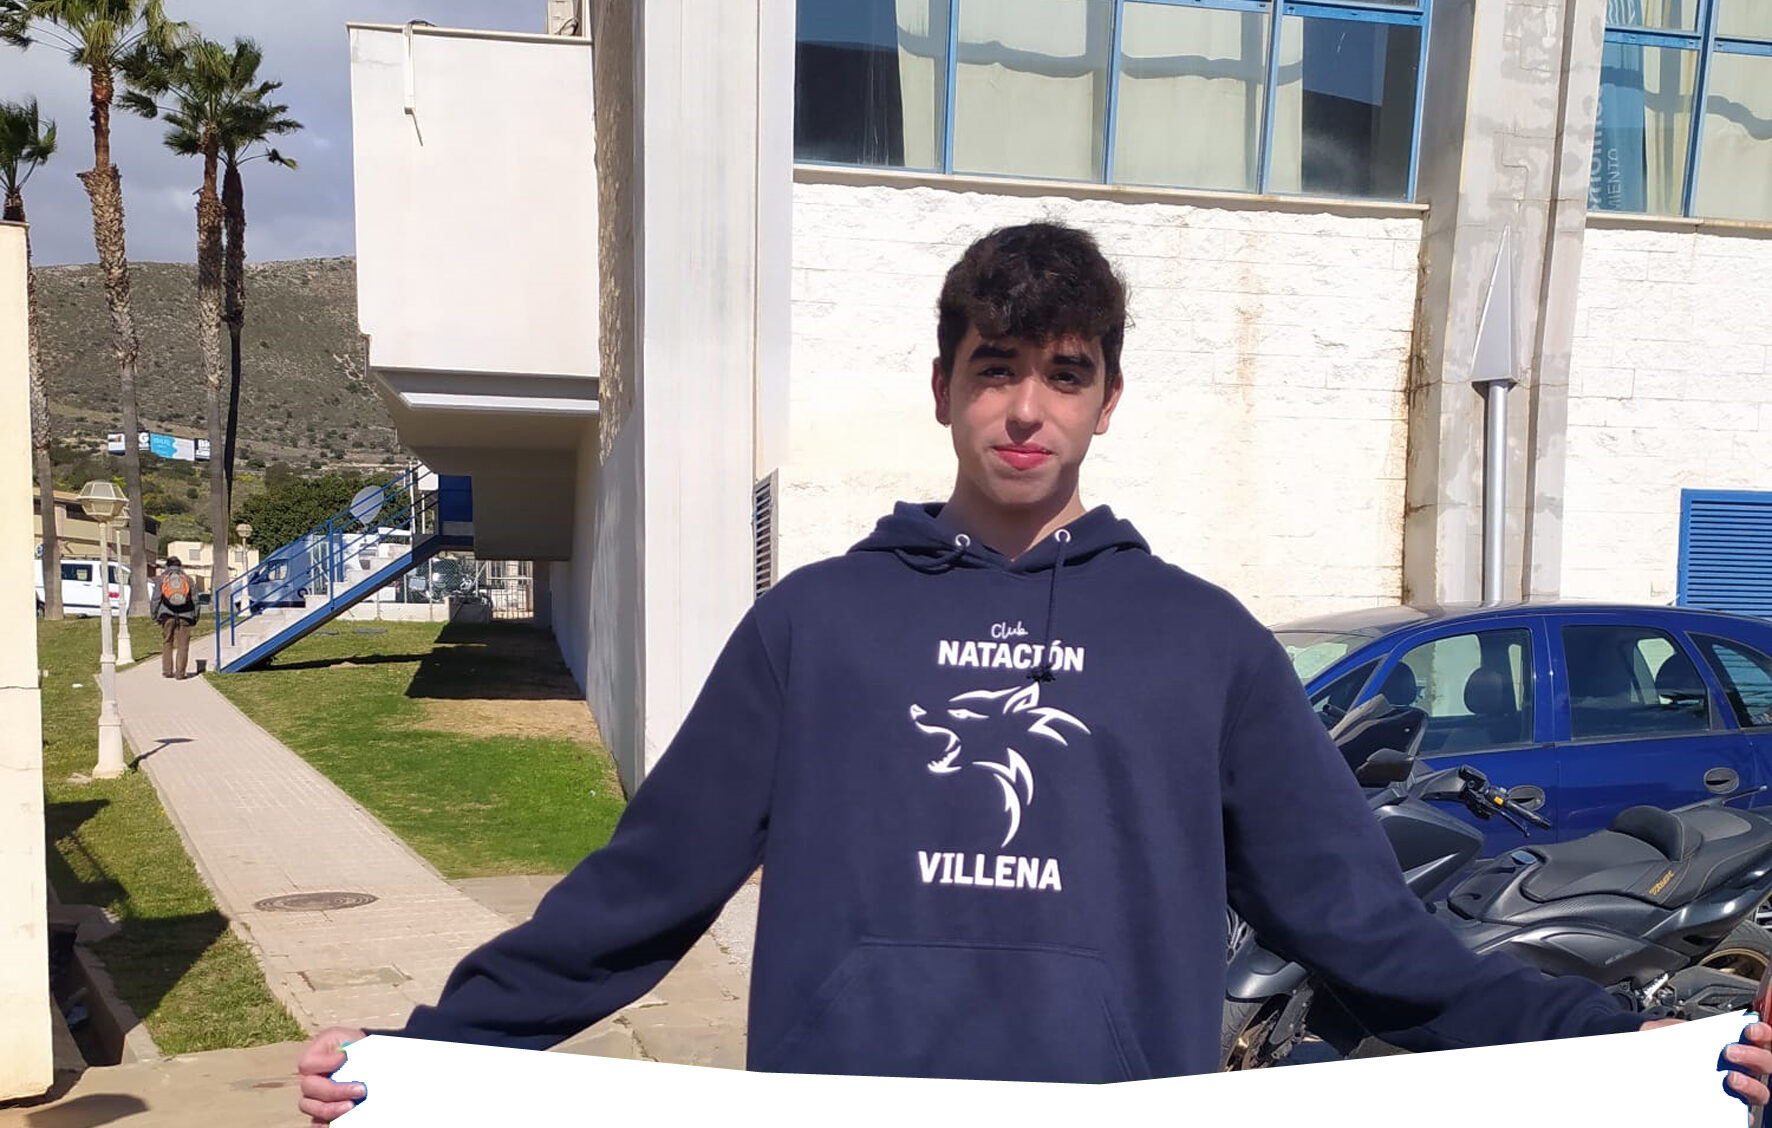 El villenense Álvaro Suárez en el campeonato de España de natación